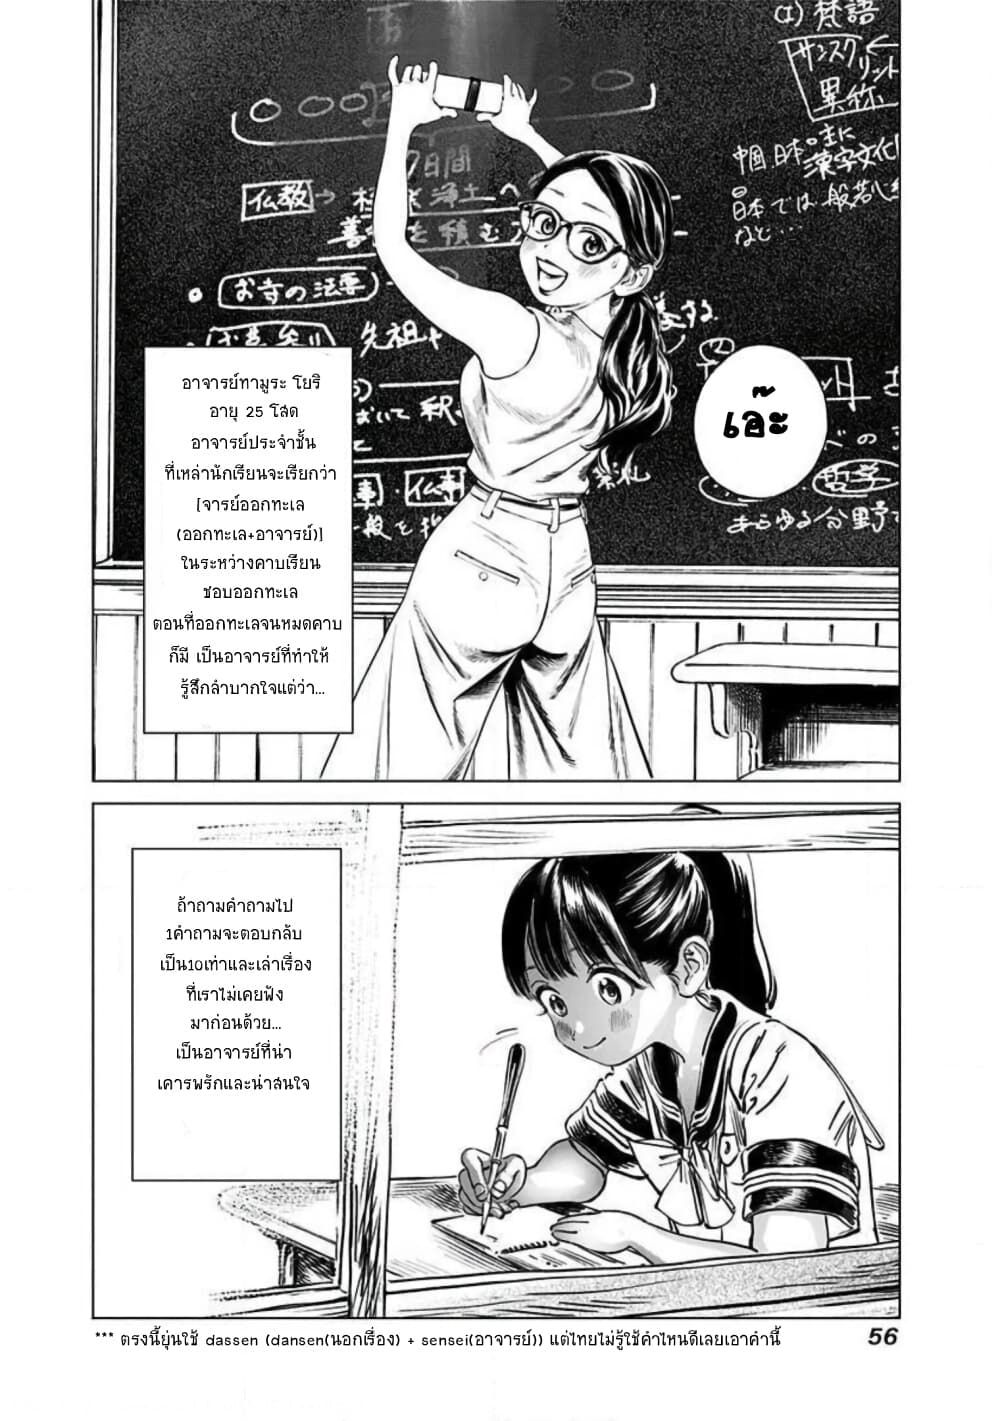 Akebi-chan no Sailor Fuku 47-ชั้นรู้นะ